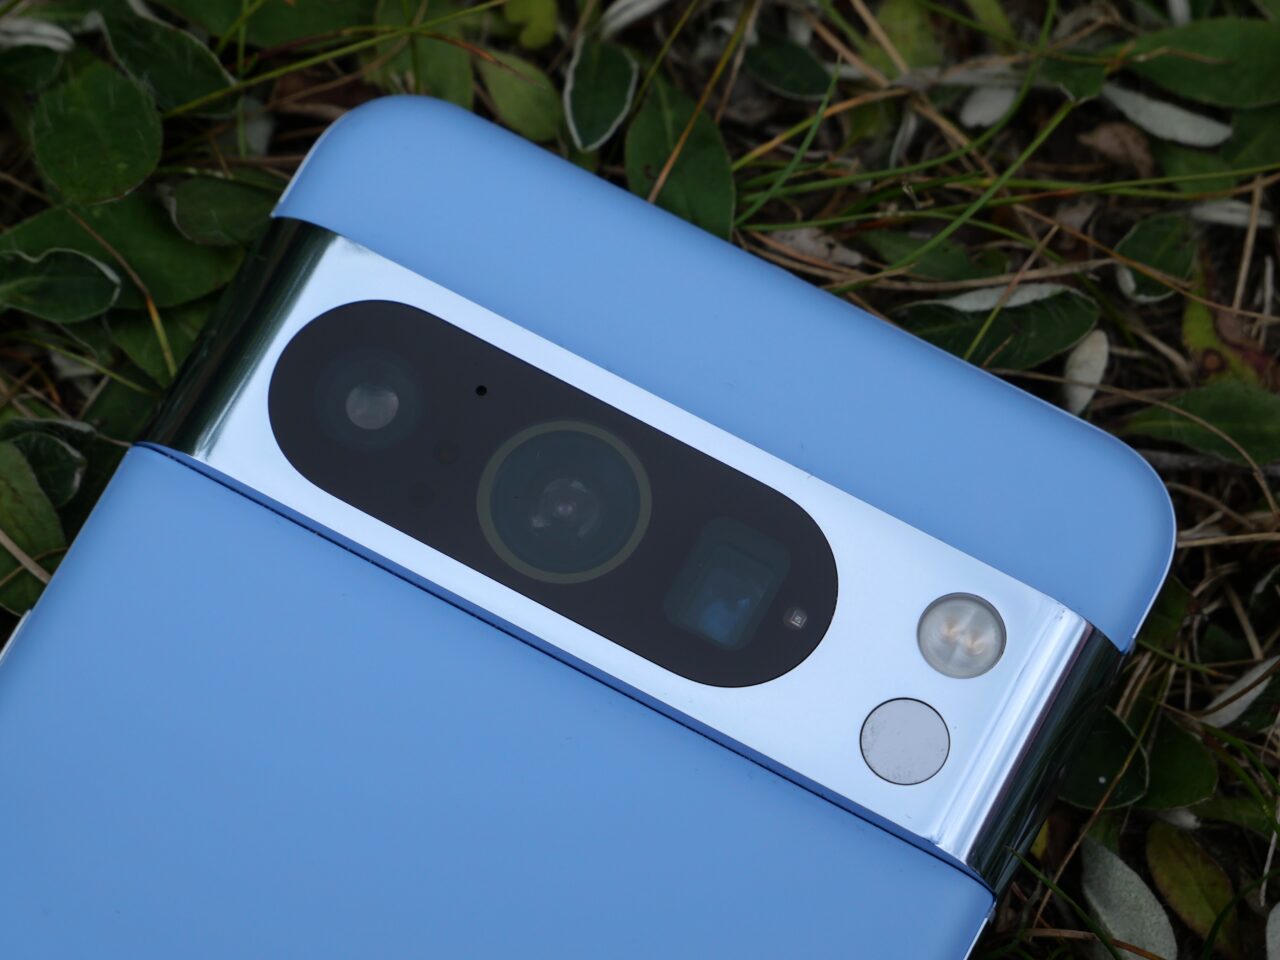 Błękitny smartfon z metalicznym wykończeniem aparatu leżący na trawie.